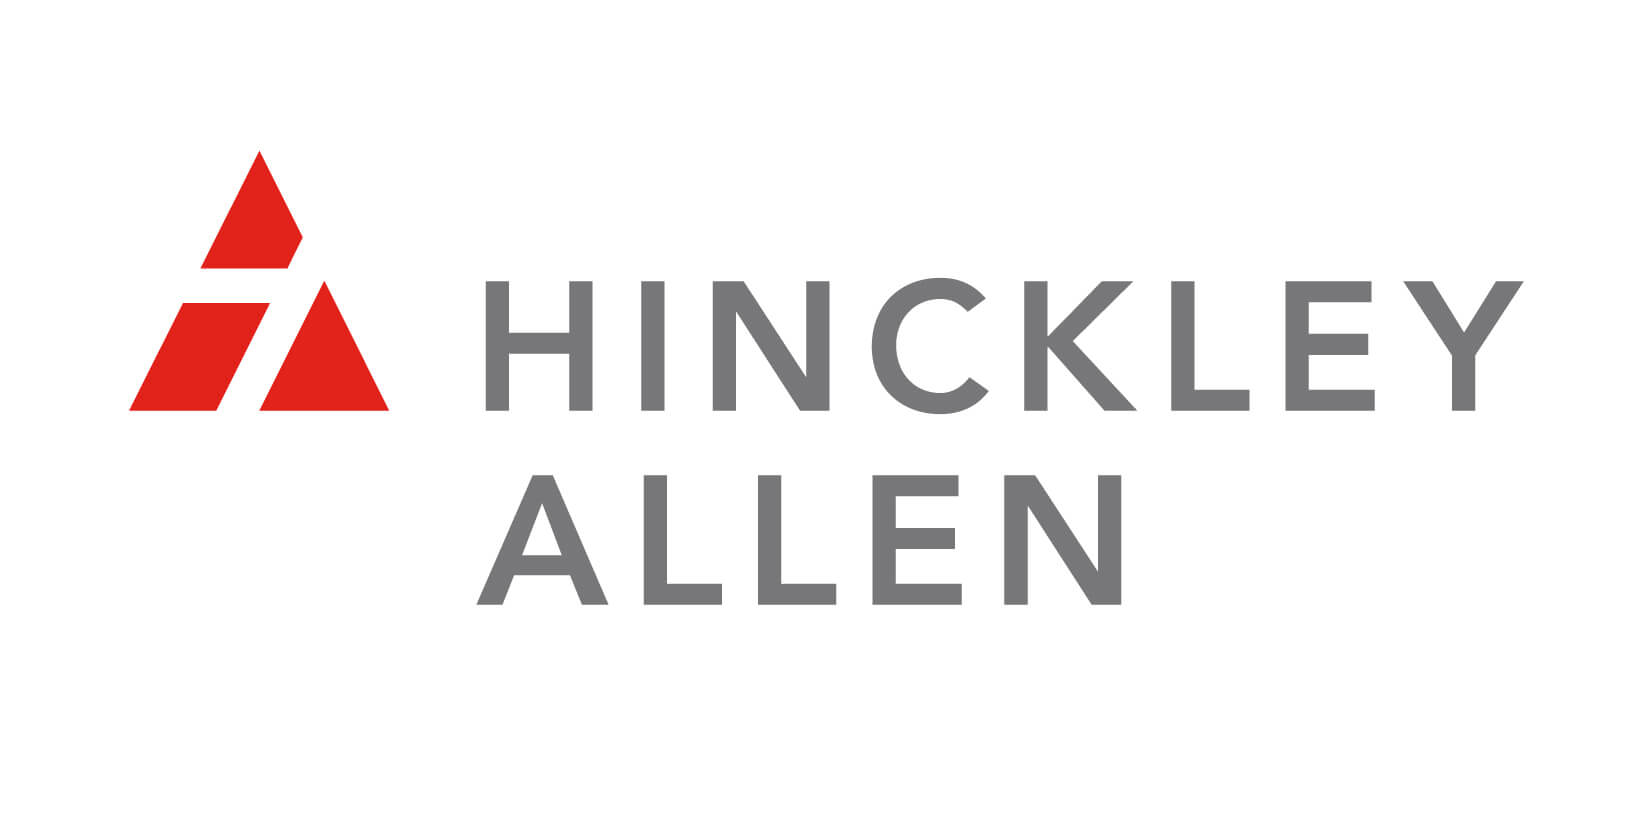 Hinkley Allen